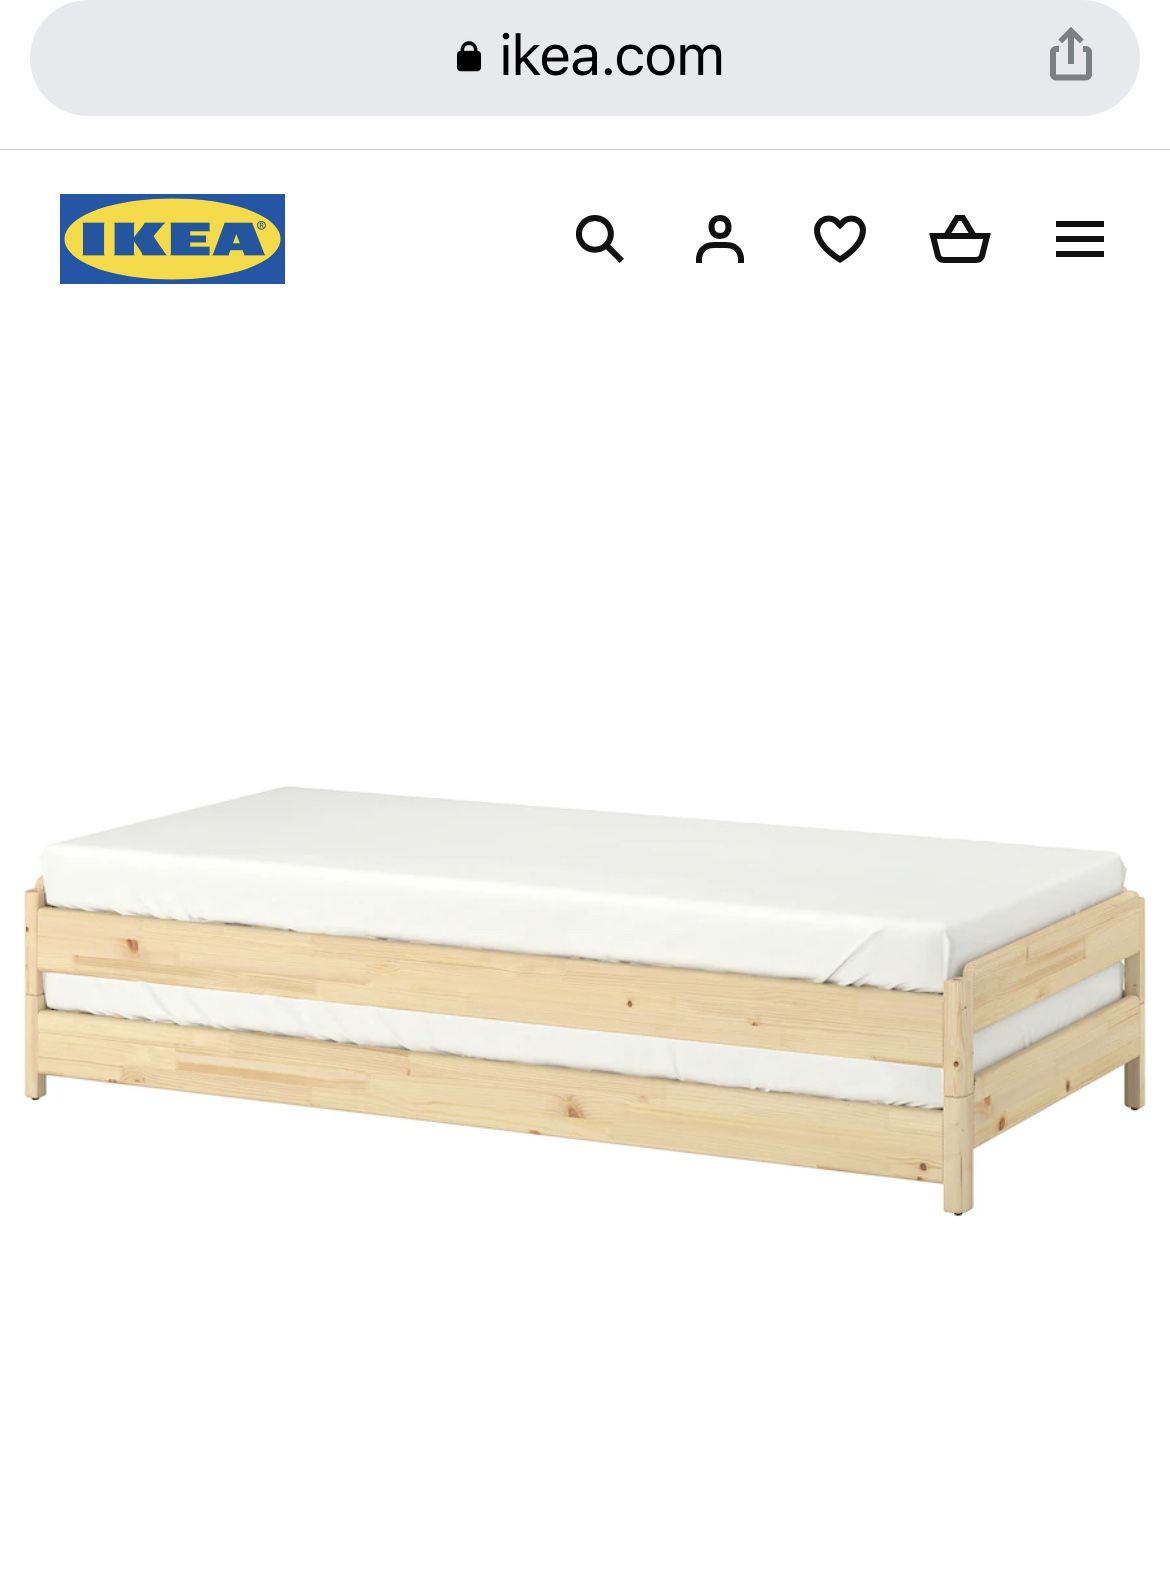 UTÅKER Stackable bed, pine, Twin - IKEA